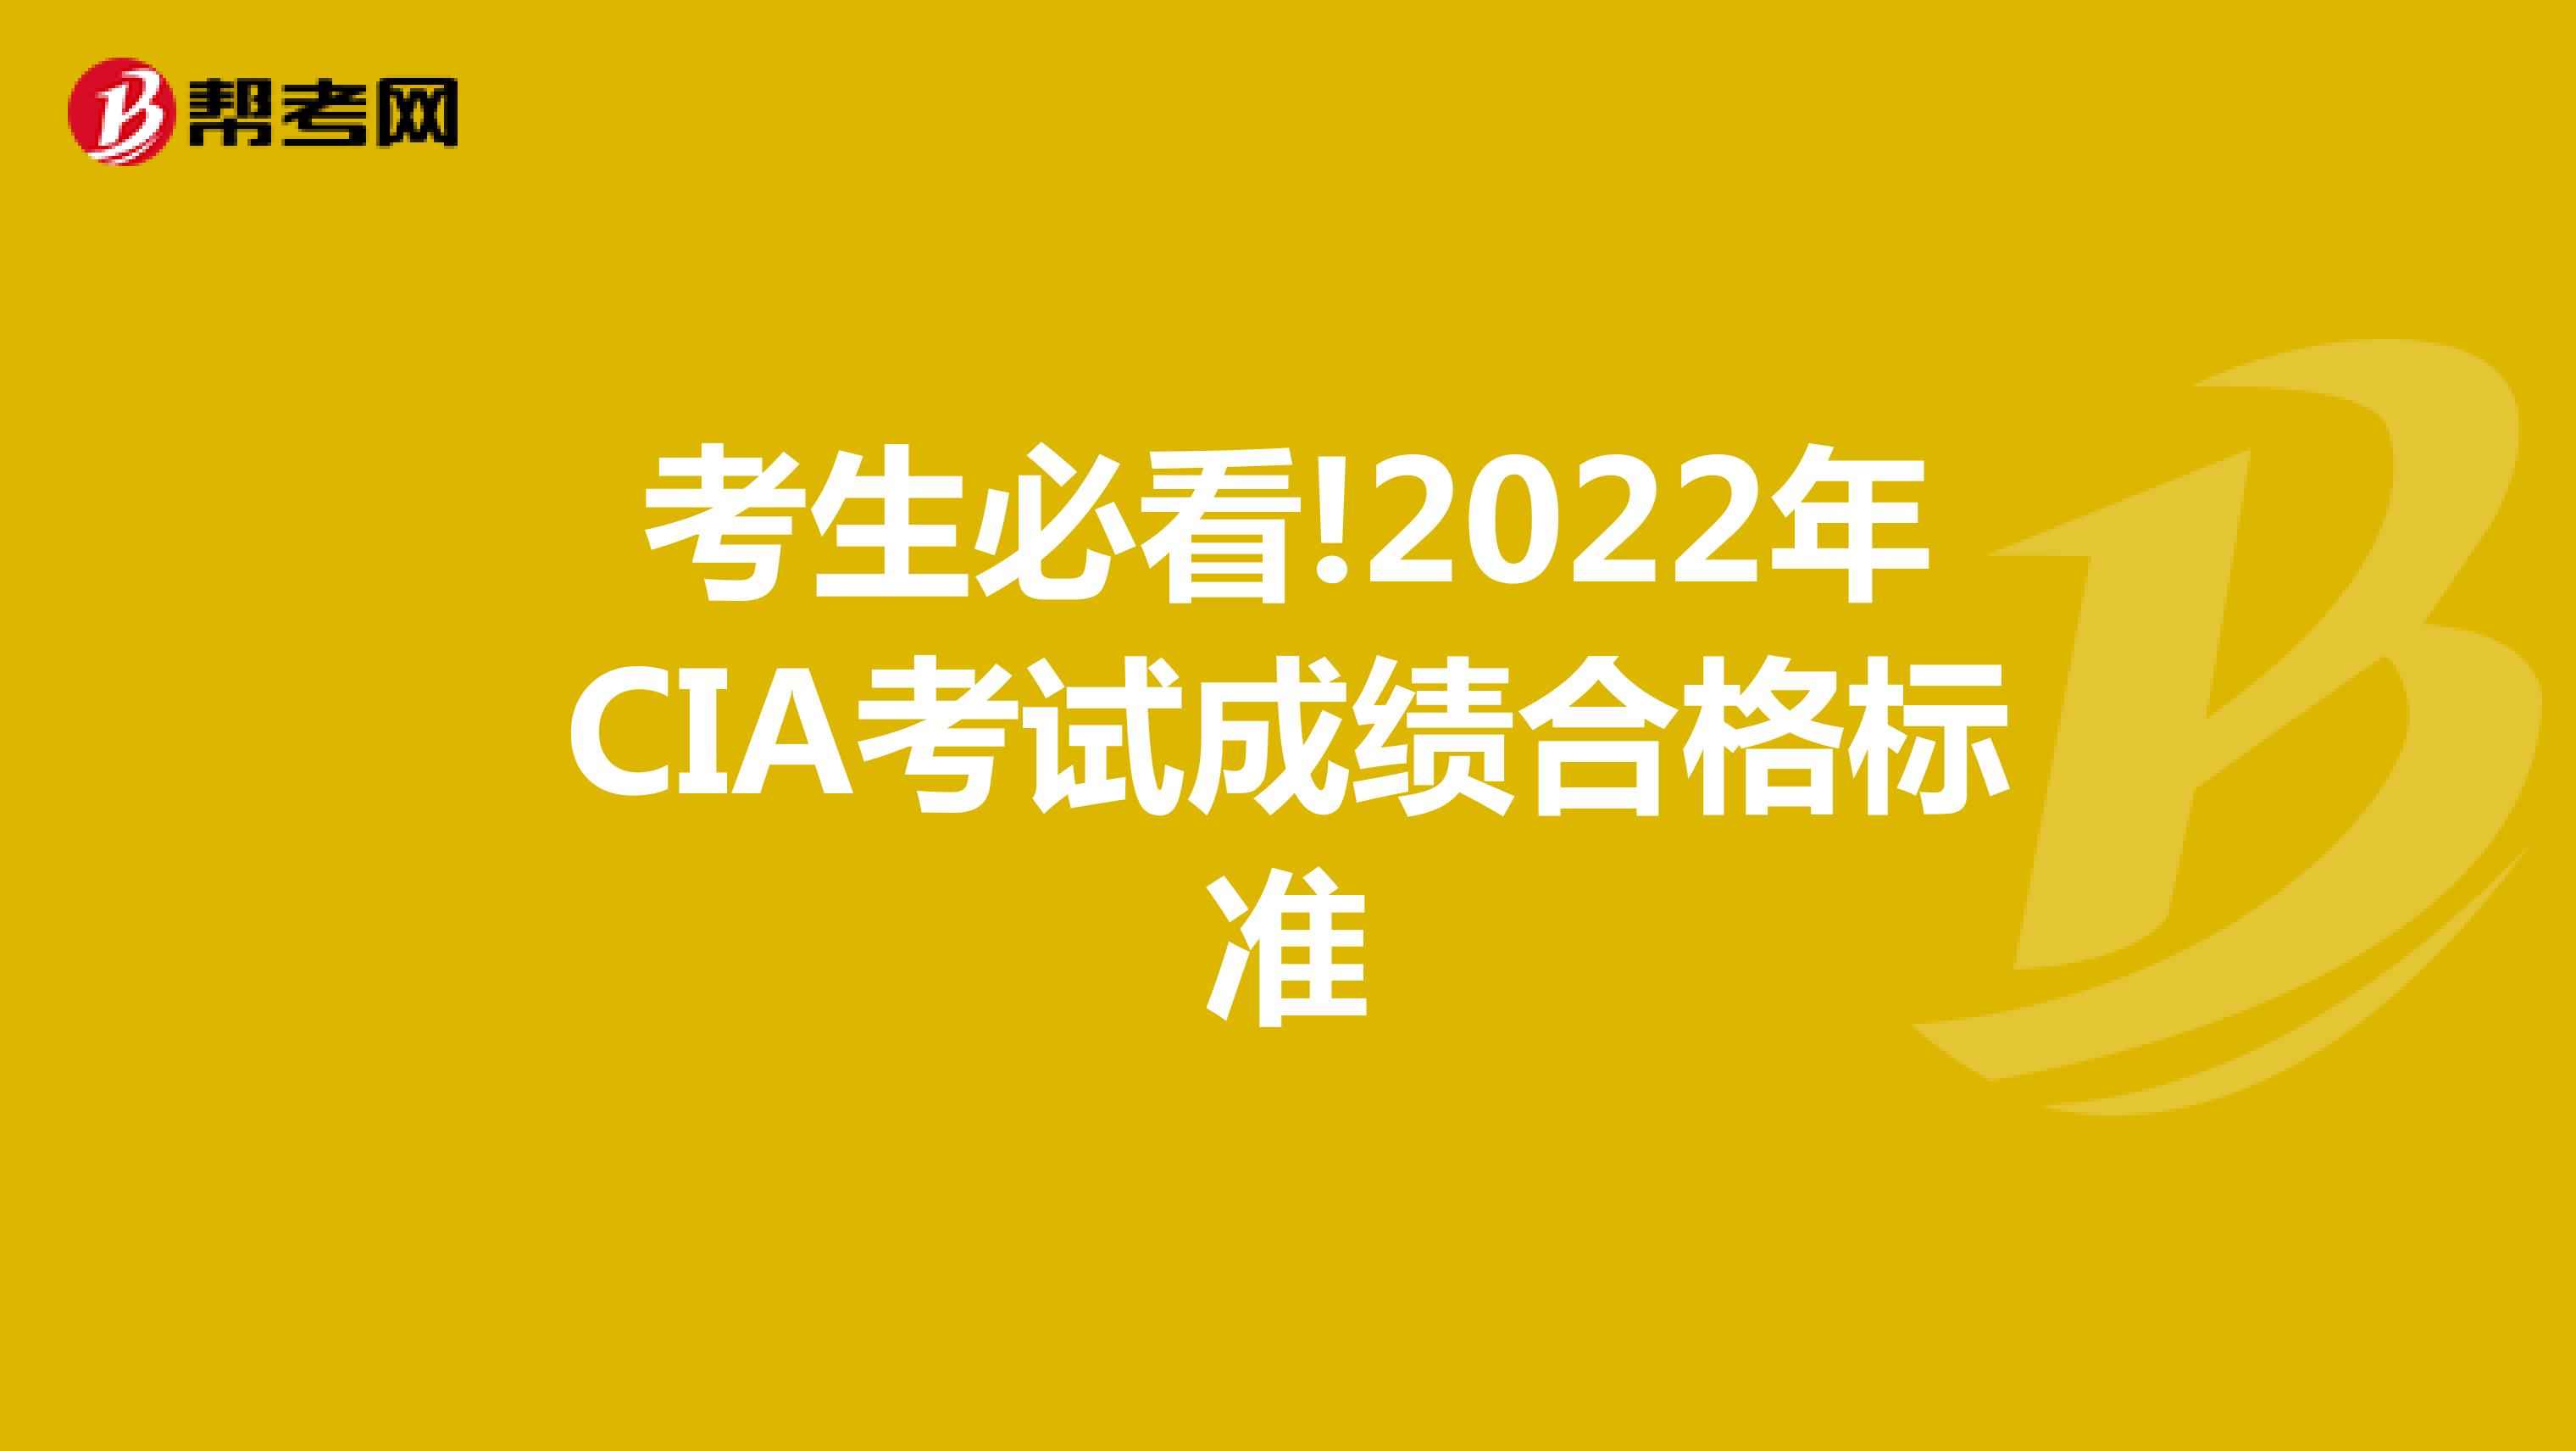 考生必看!2022年CIA考试成绩合格标准